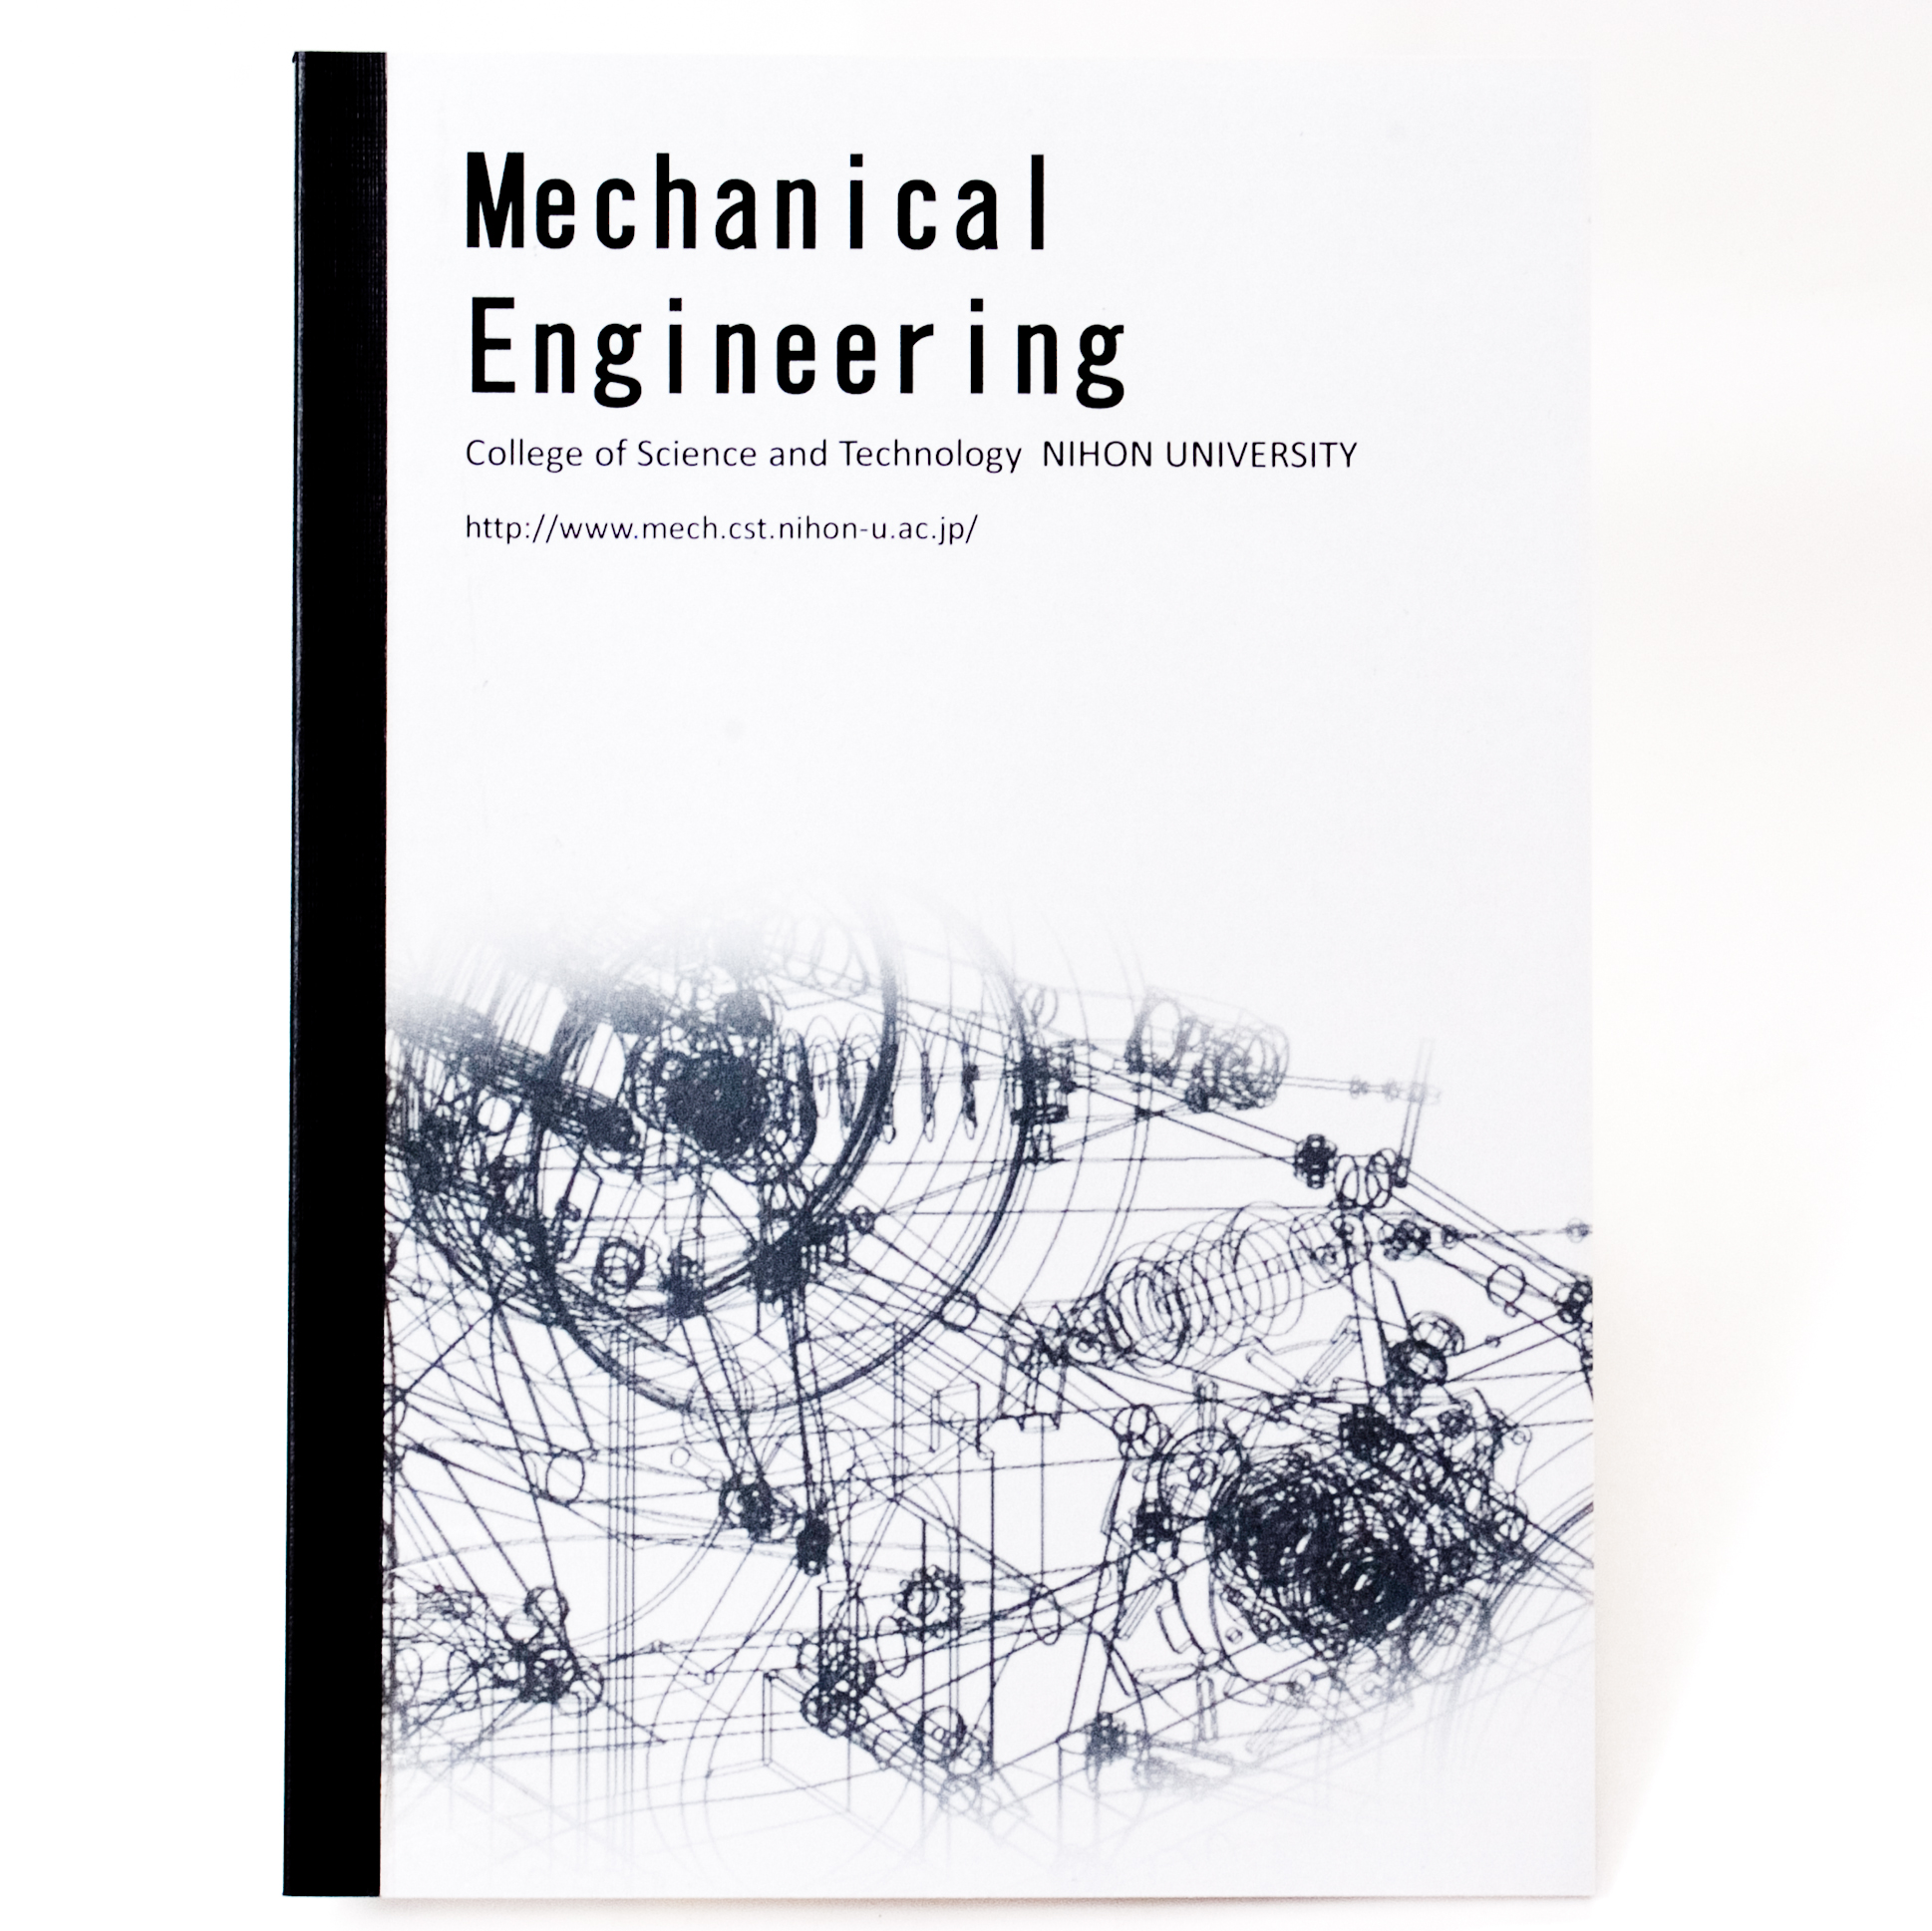 「日本大学理工学部機械工学科 様」製作のオリジナルノート